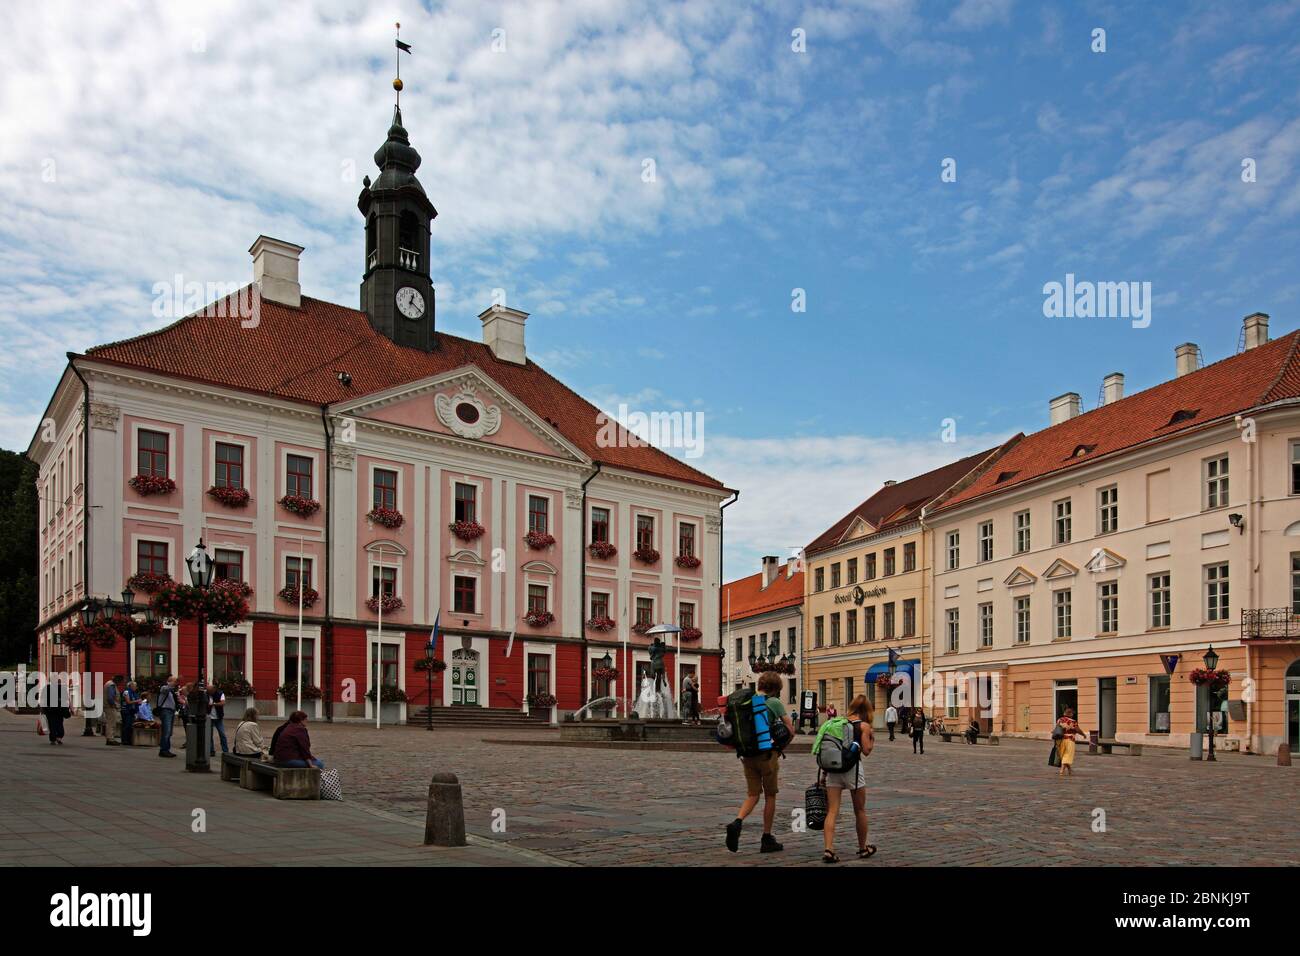 Stati baltici, Estonia, Tartu, municipio, classicismo precoce, facciata, fontana, studenti bacianti Foto Stock